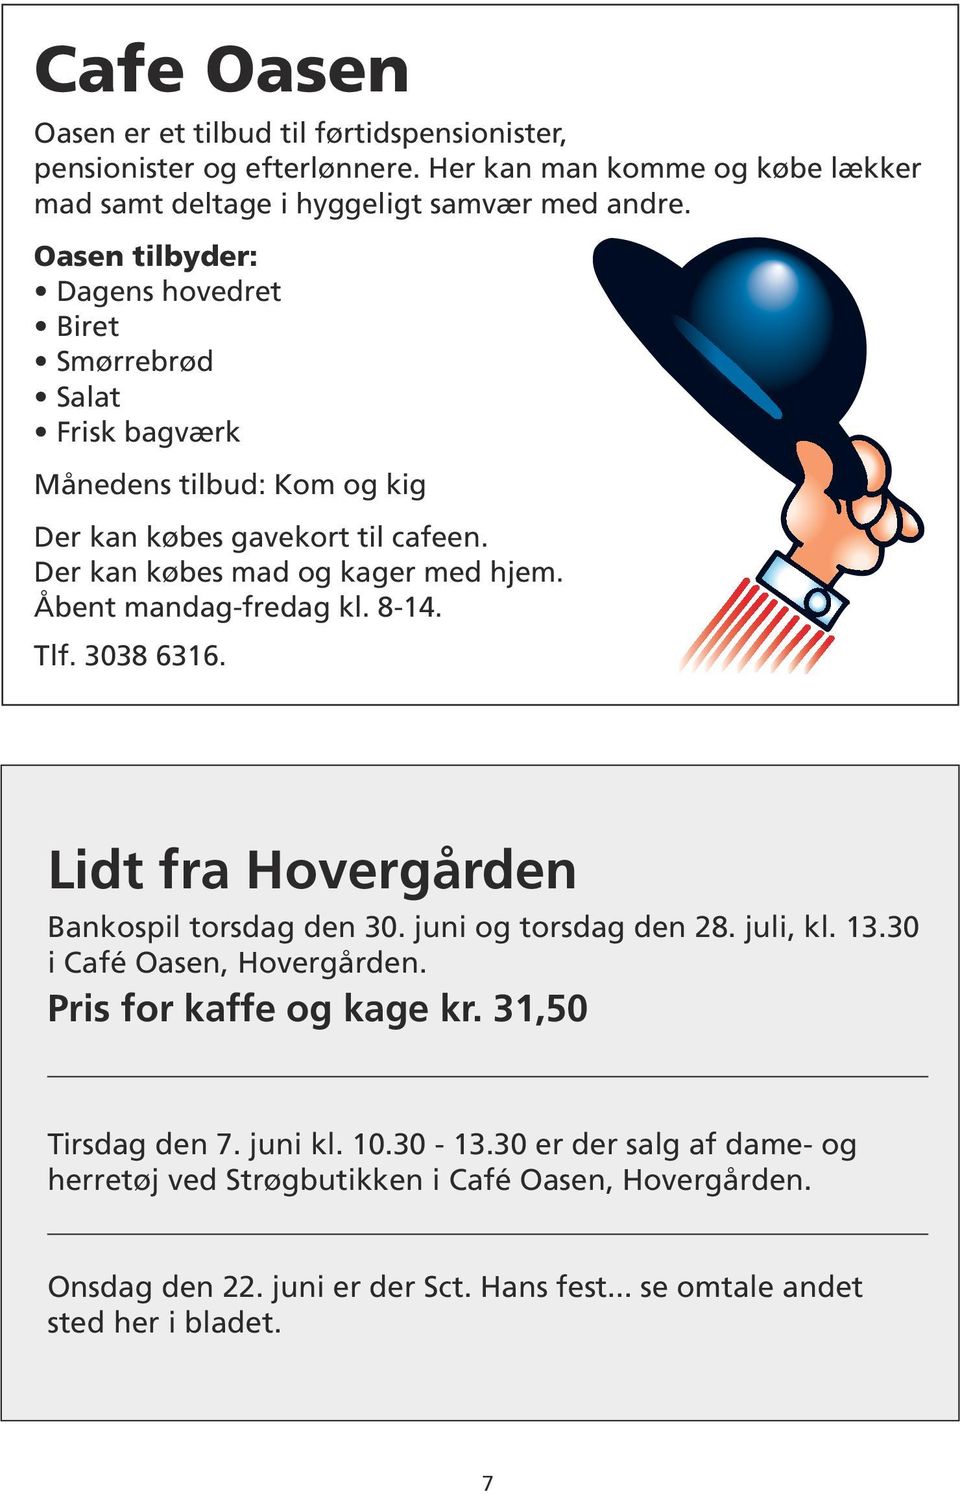 Tlf. 3038 6316. Nærmere dig Lidt fra Hovergården Bankospil torsdag den 30. juni og torsdag den 28. juli, kl. 13.30 i Café Oasen, Hovergården. Pris for kaffe og kage kr. 31,50 Tirsdag den 7. juni kl.